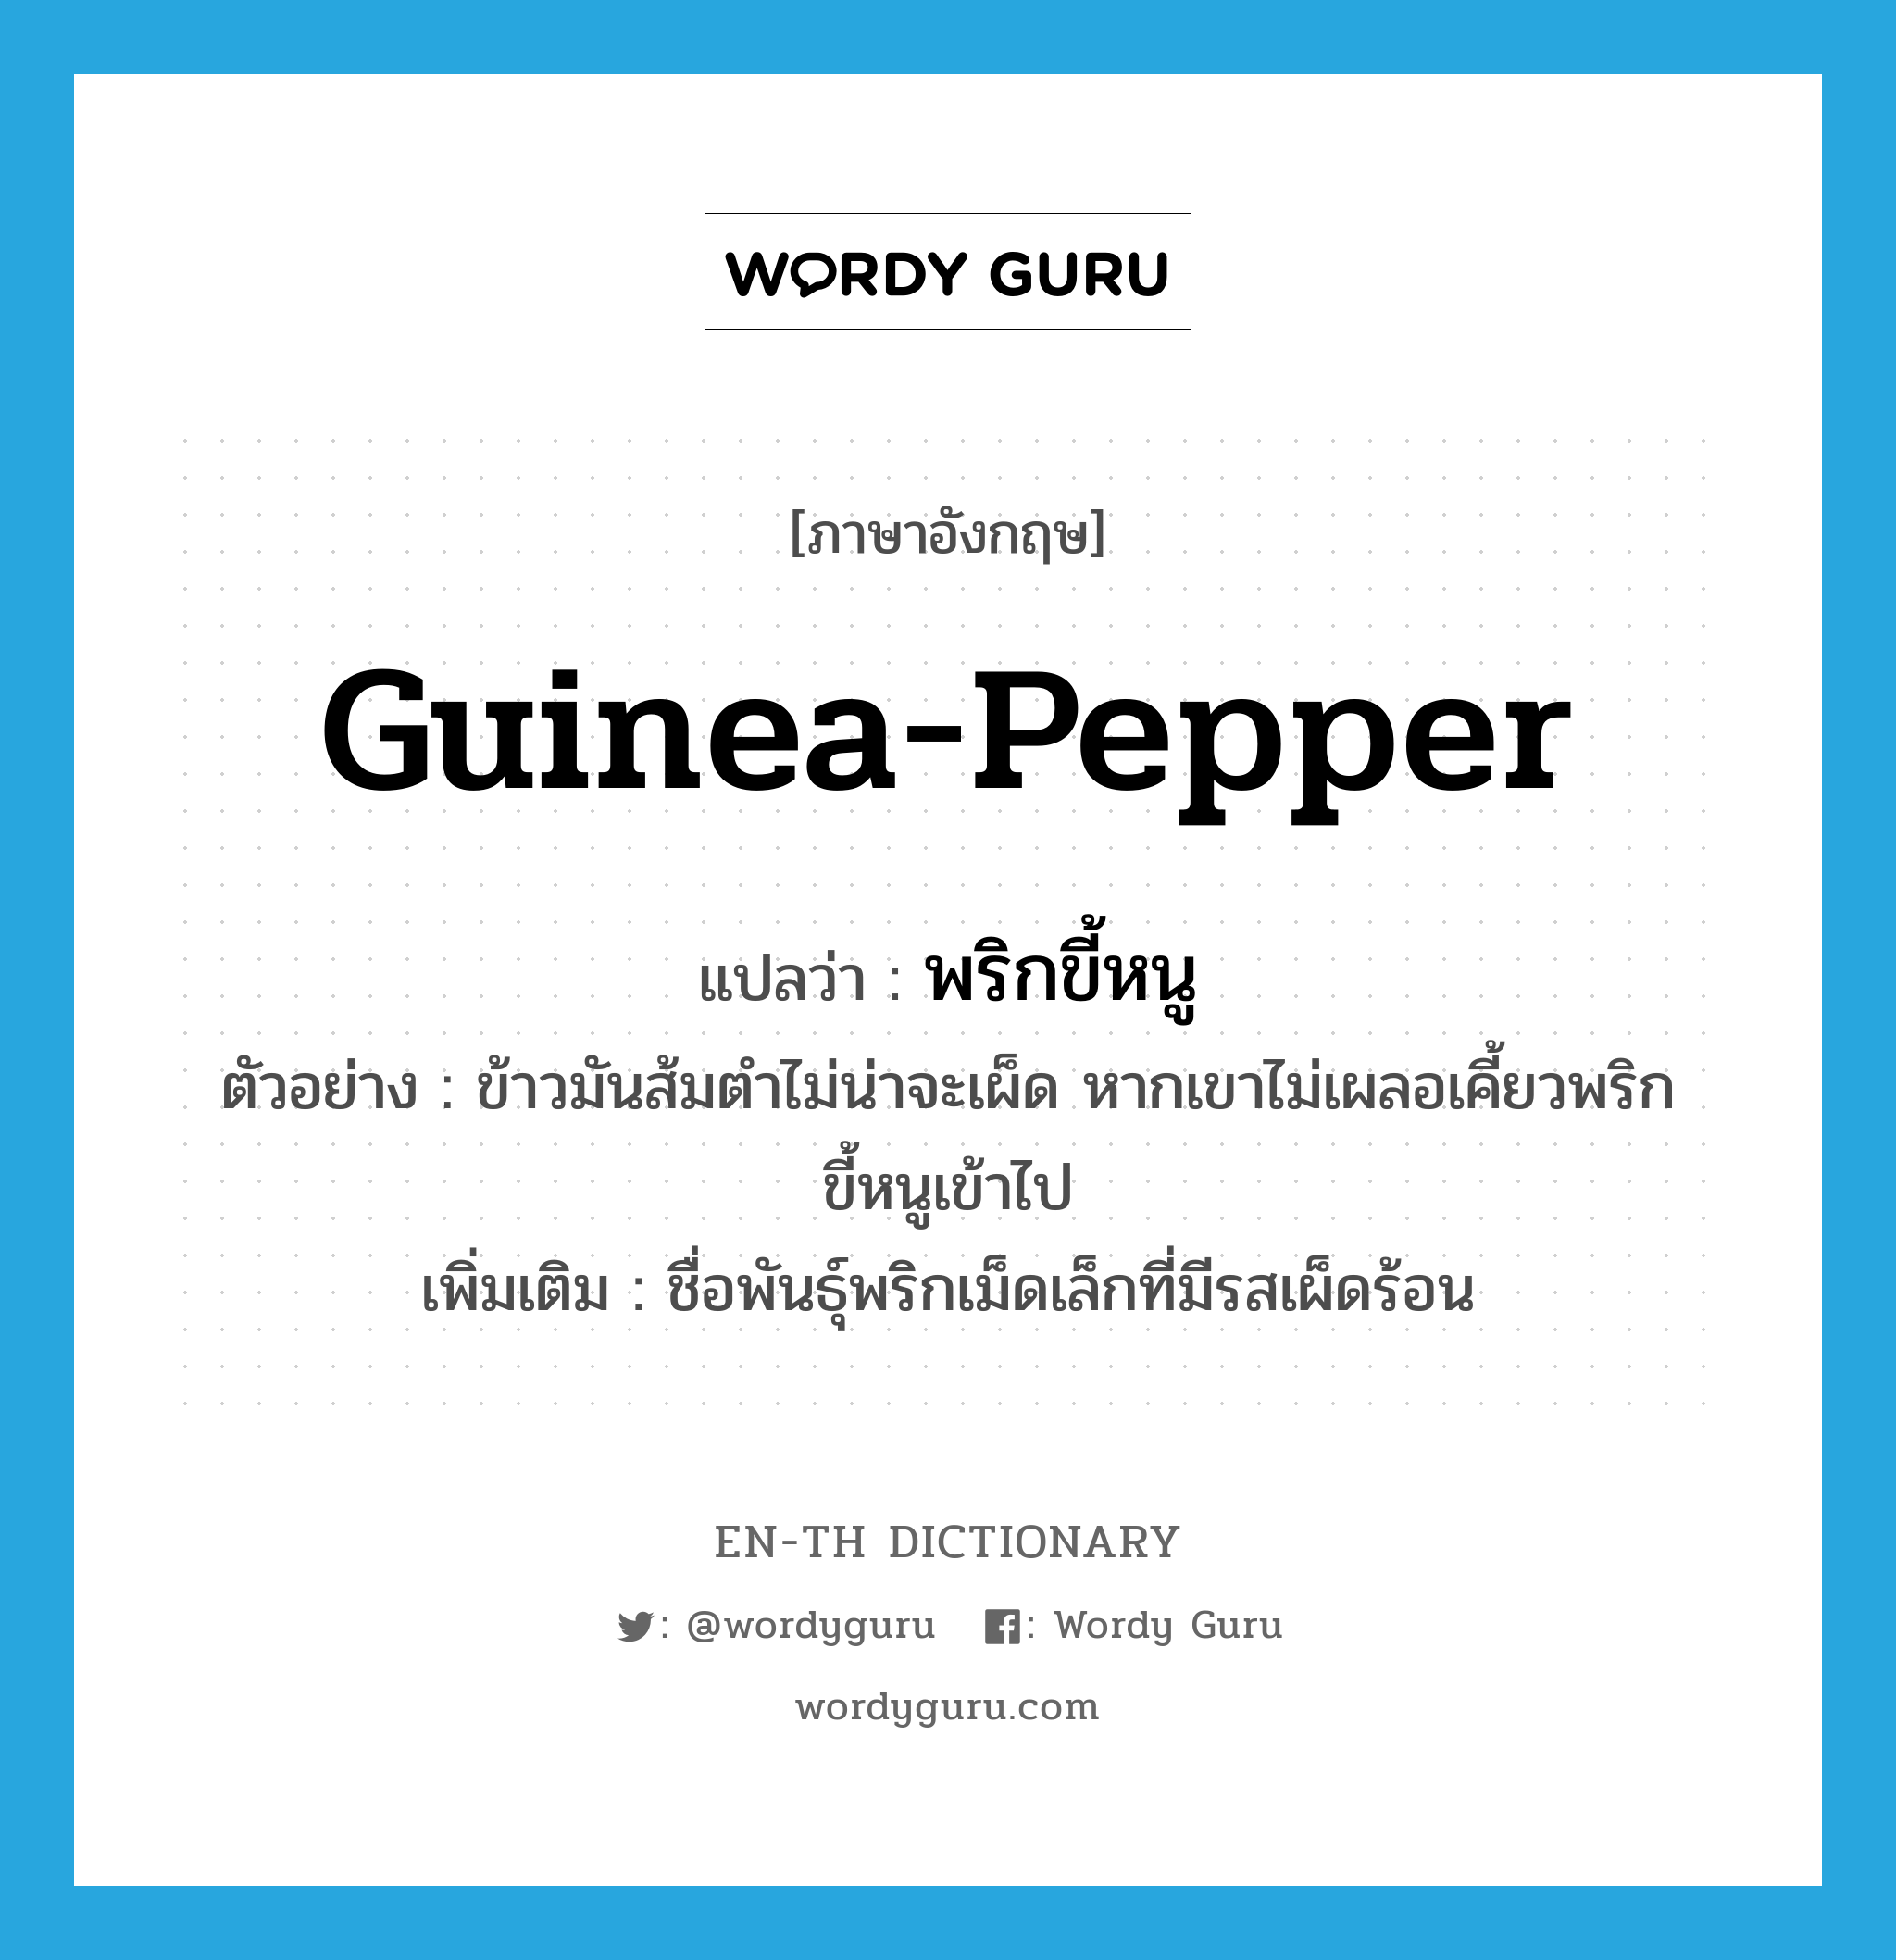 Guinea pepper แปลว่า?, คำศัพท์ภาษาอังกฤษ guinea-pepper แปลว่า พริกขี้หนู ประเภท N ตัวอย่าง ข้าวมันส้มตำไม่น่าจะเผ็ด หากเขาไม่เผลอเคี้ยวพริกขี้หนูเข้าไป เพิ่มเติม ชื่อพันธุ์พริกเม็ดเล็กที่มีรสเผ็ดร้อน หมวด N